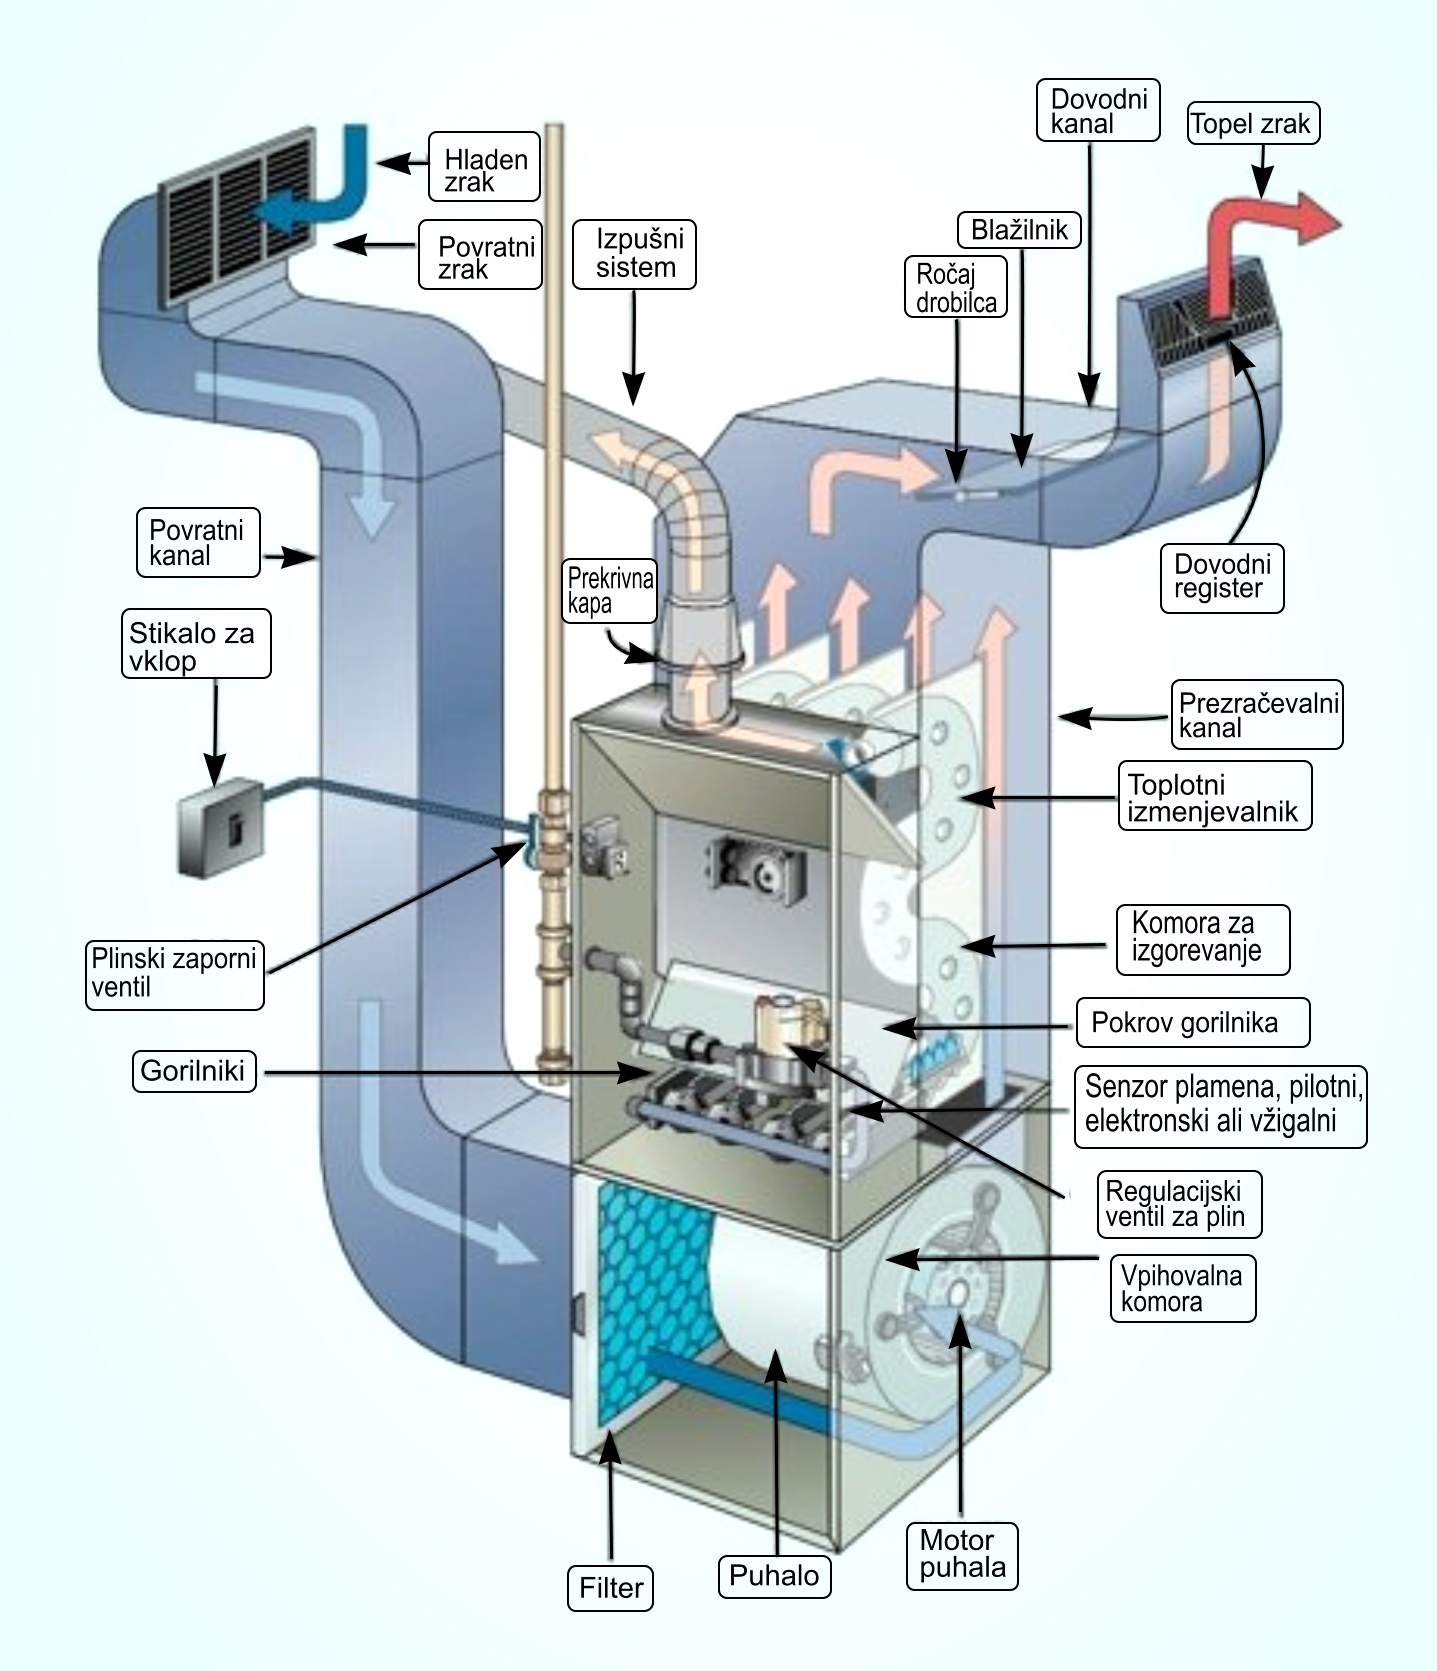 Теплый поток воздуха. Воздушное отопление схема.принцип работы. Газовый котел для подогрева воздуха в вентиляции. Heating System система отопления. Газовый теплогенератор воздушного отопления промышленный.